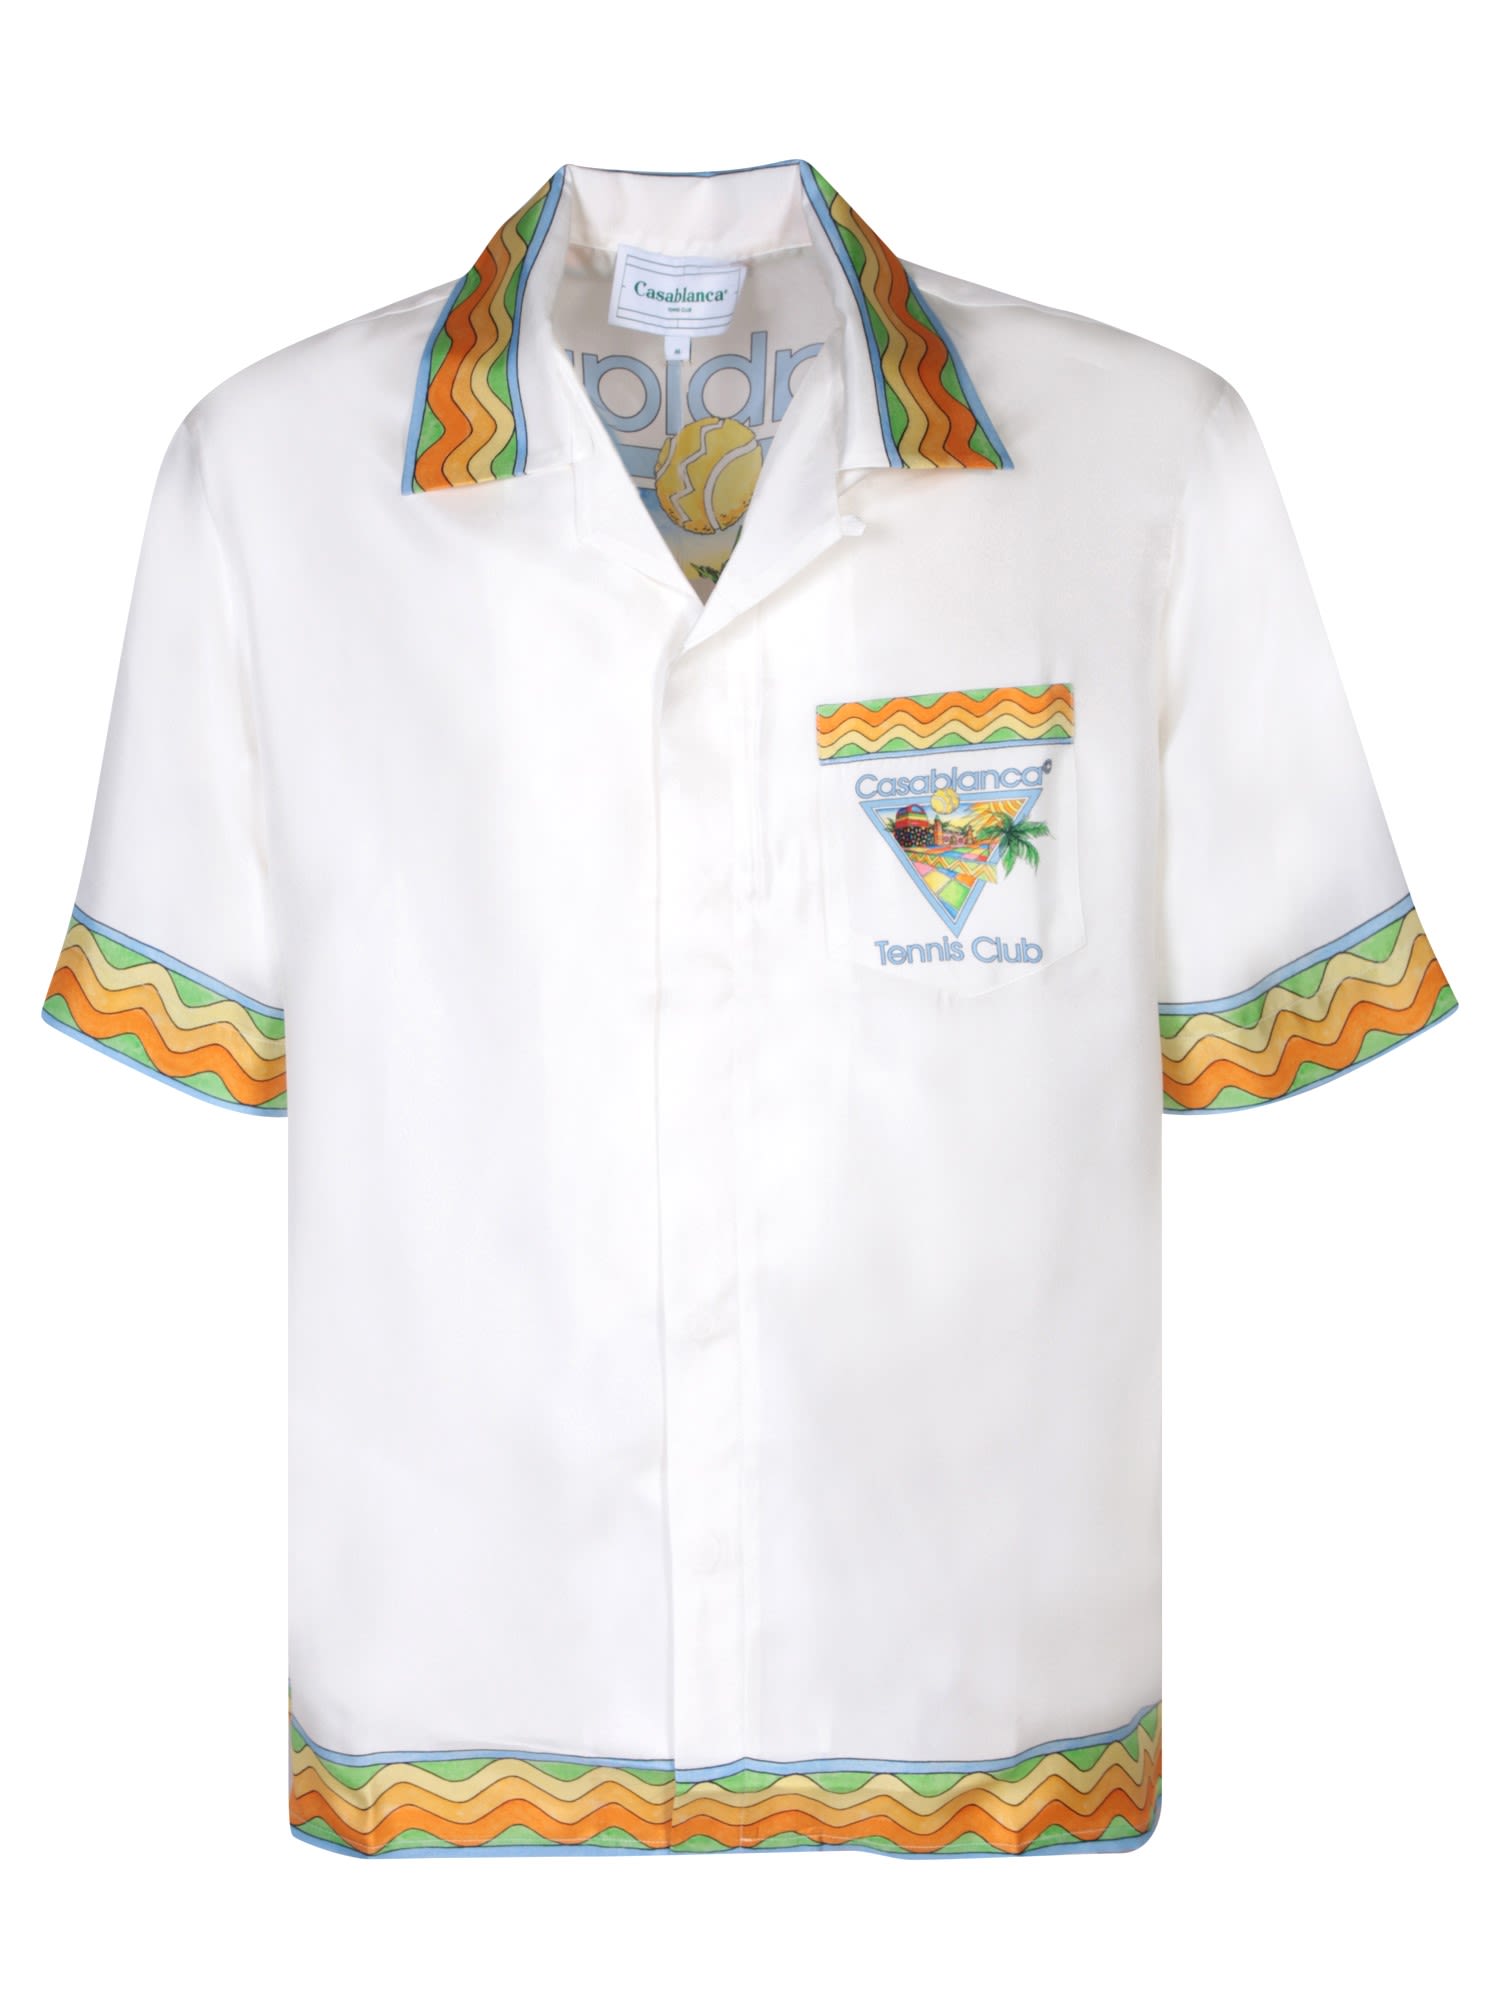 Shop Casablanca Afro Cubism Tennis Club White/multicolor Shirt